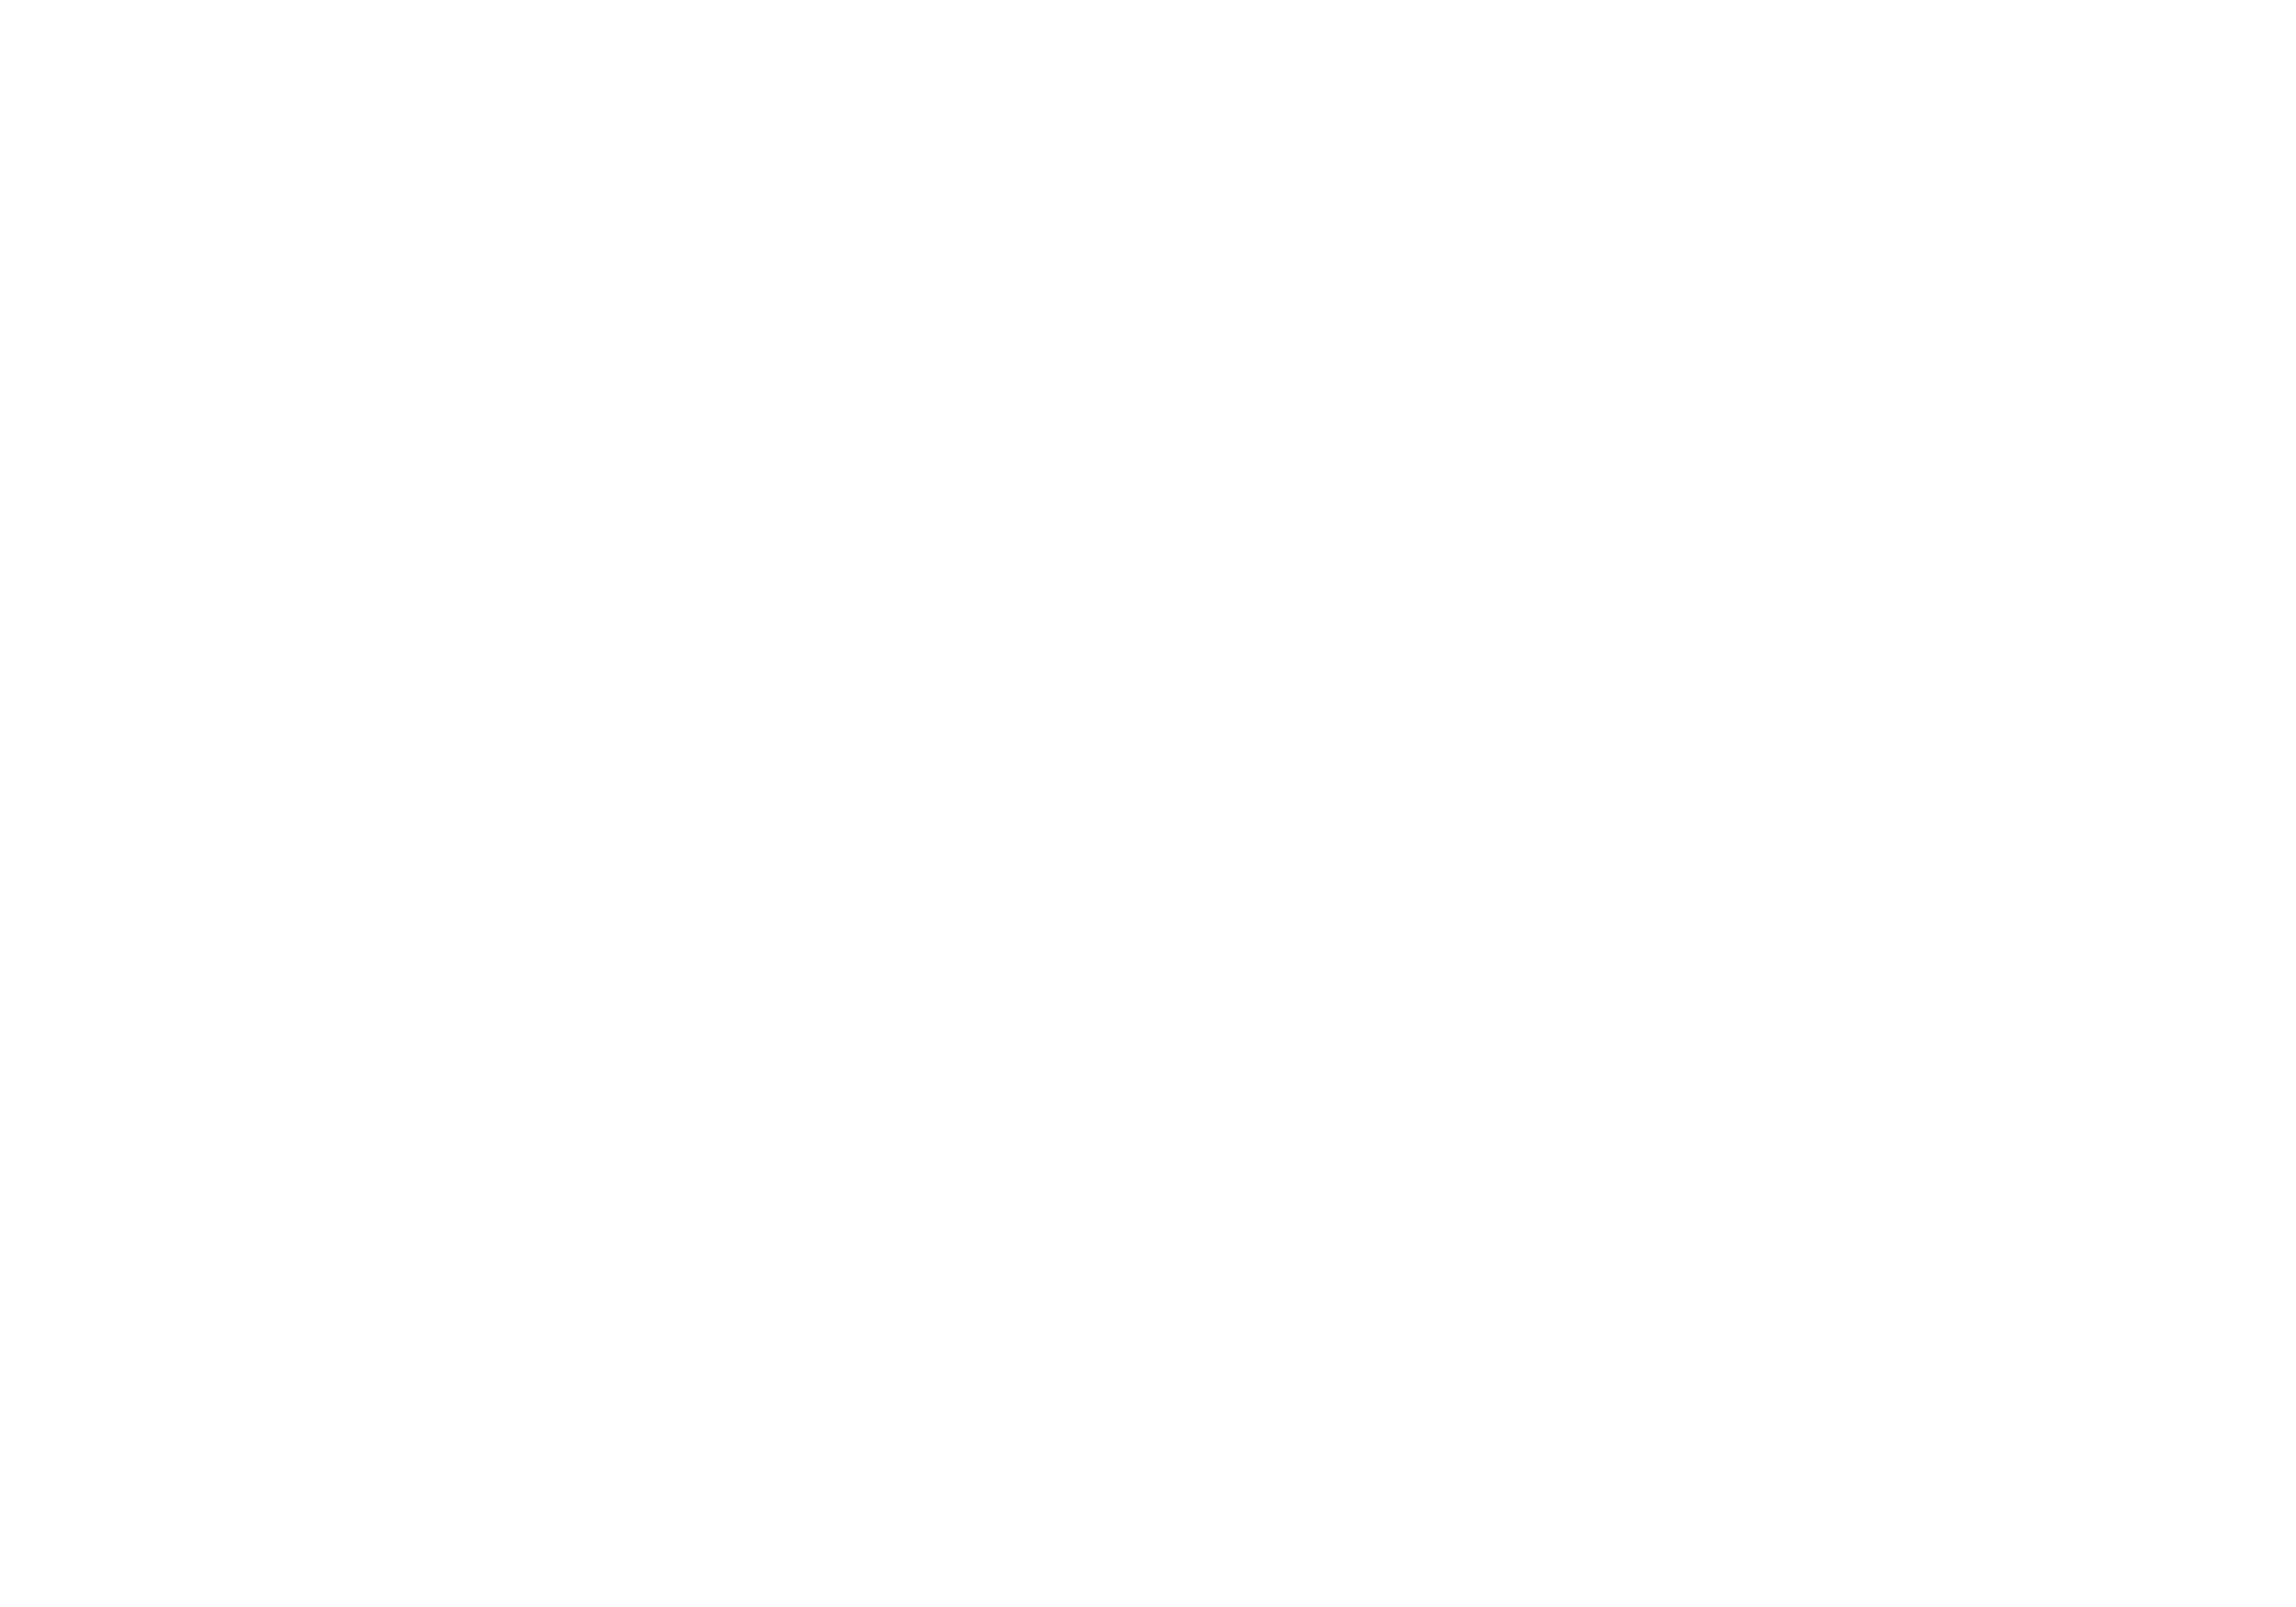 Studievereniging Facilitas